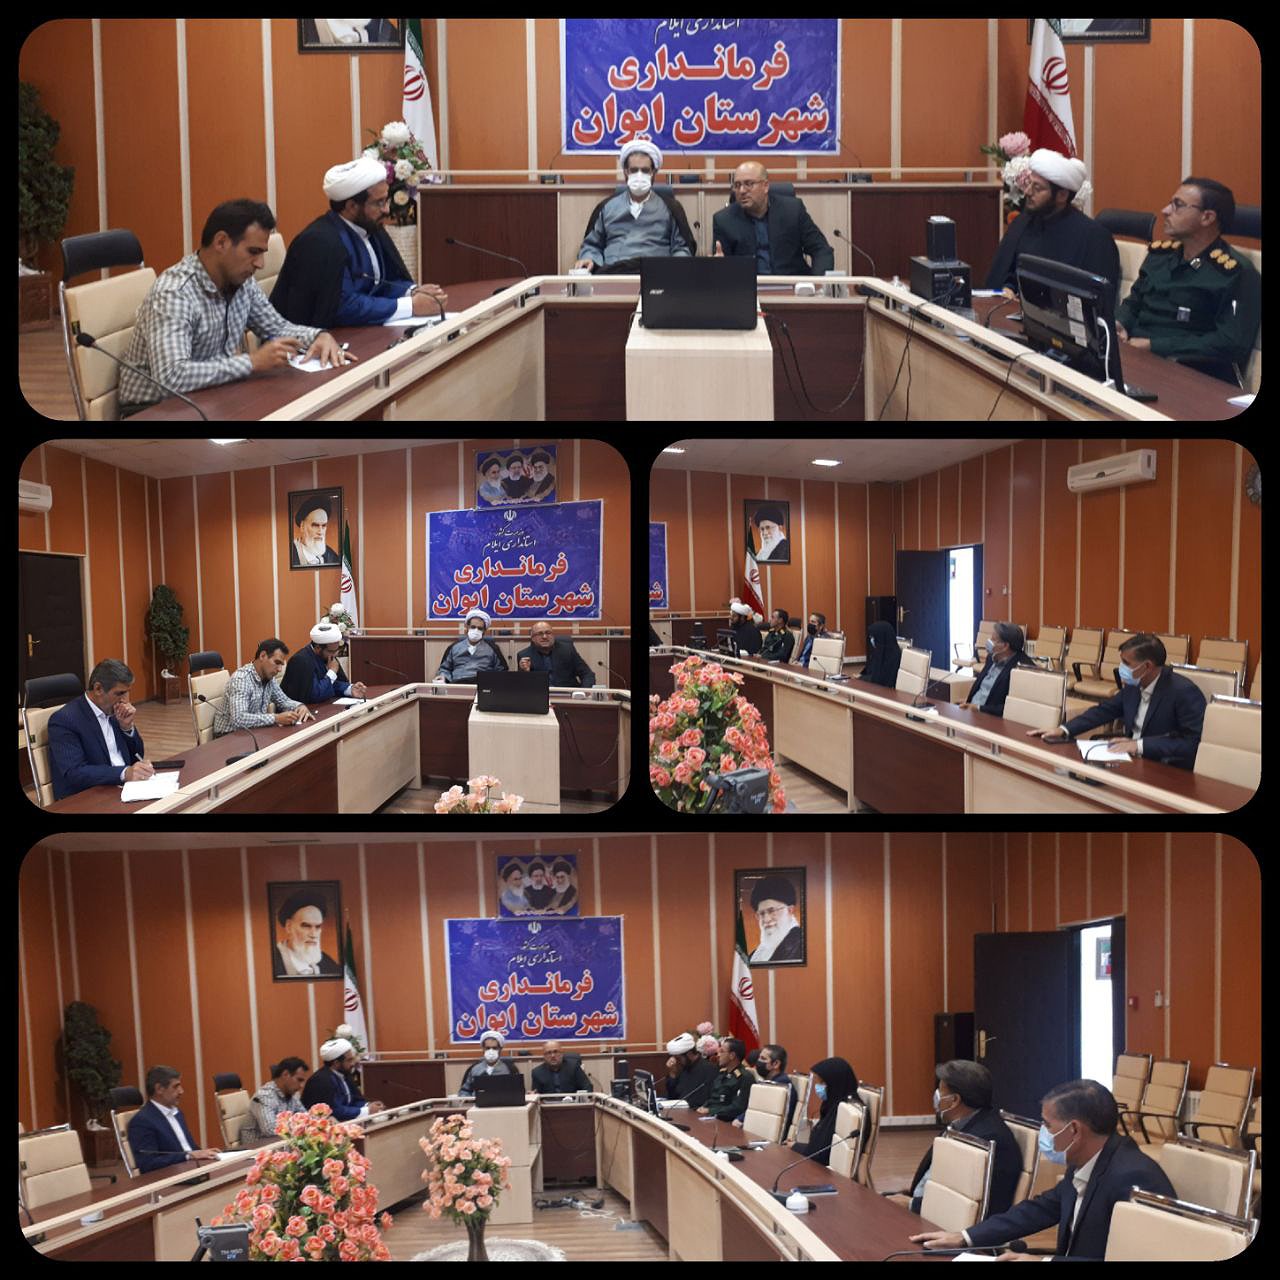 ✅ برگزاری جلسه نشست گفتمان جهاد تبیین در شهرستان ایوان